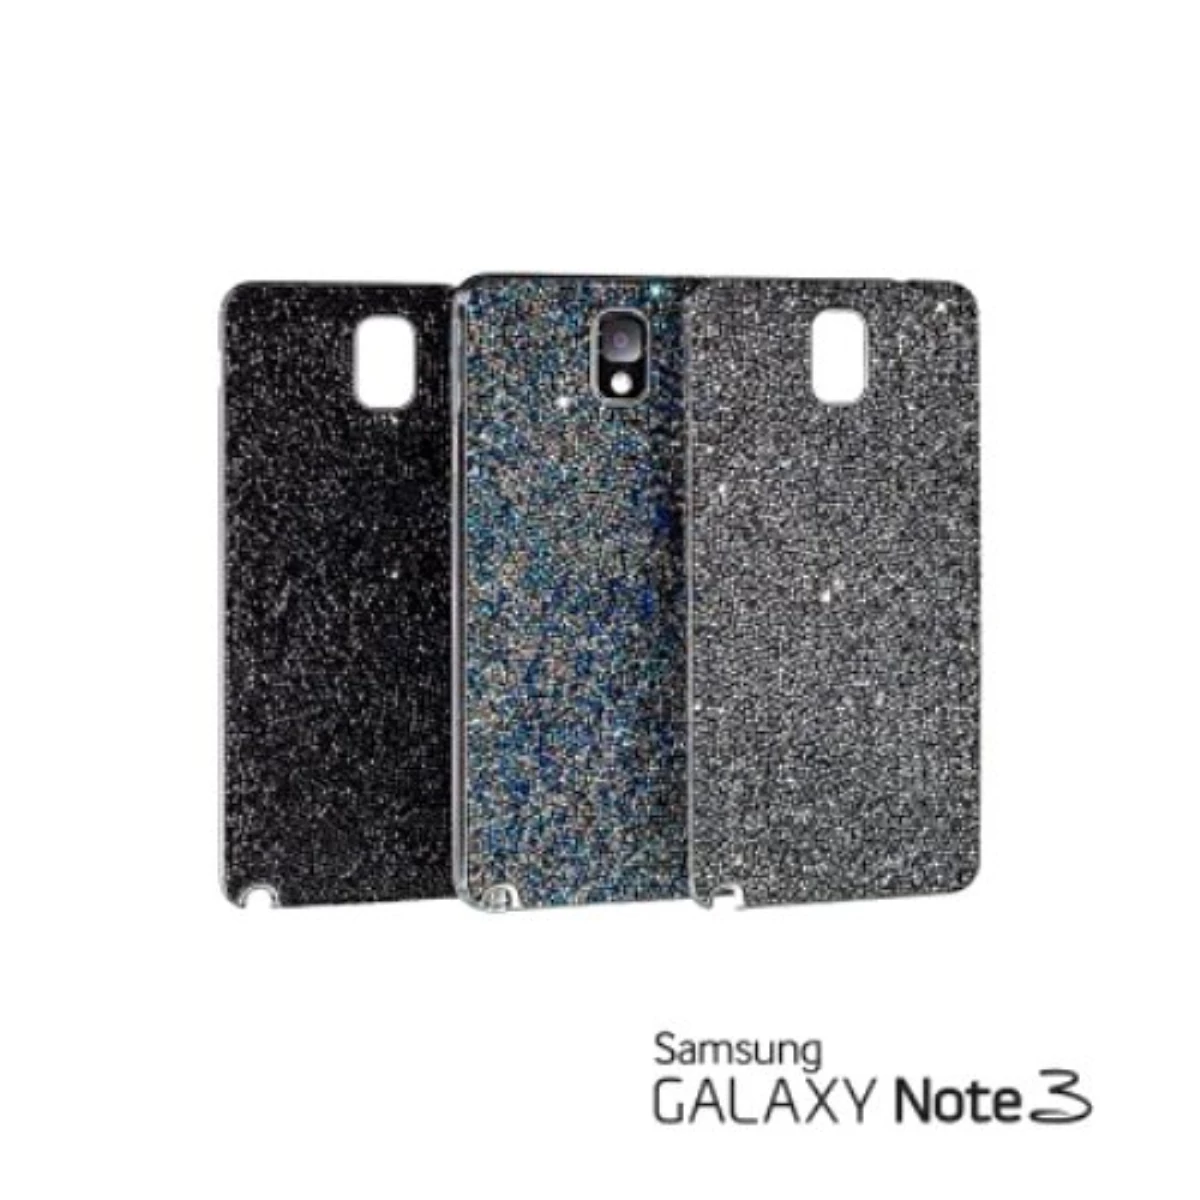 Samsung Galaxy Note 3 Swarovski Özel Tasarım Kapağı ile Göz Kamaştırıyor